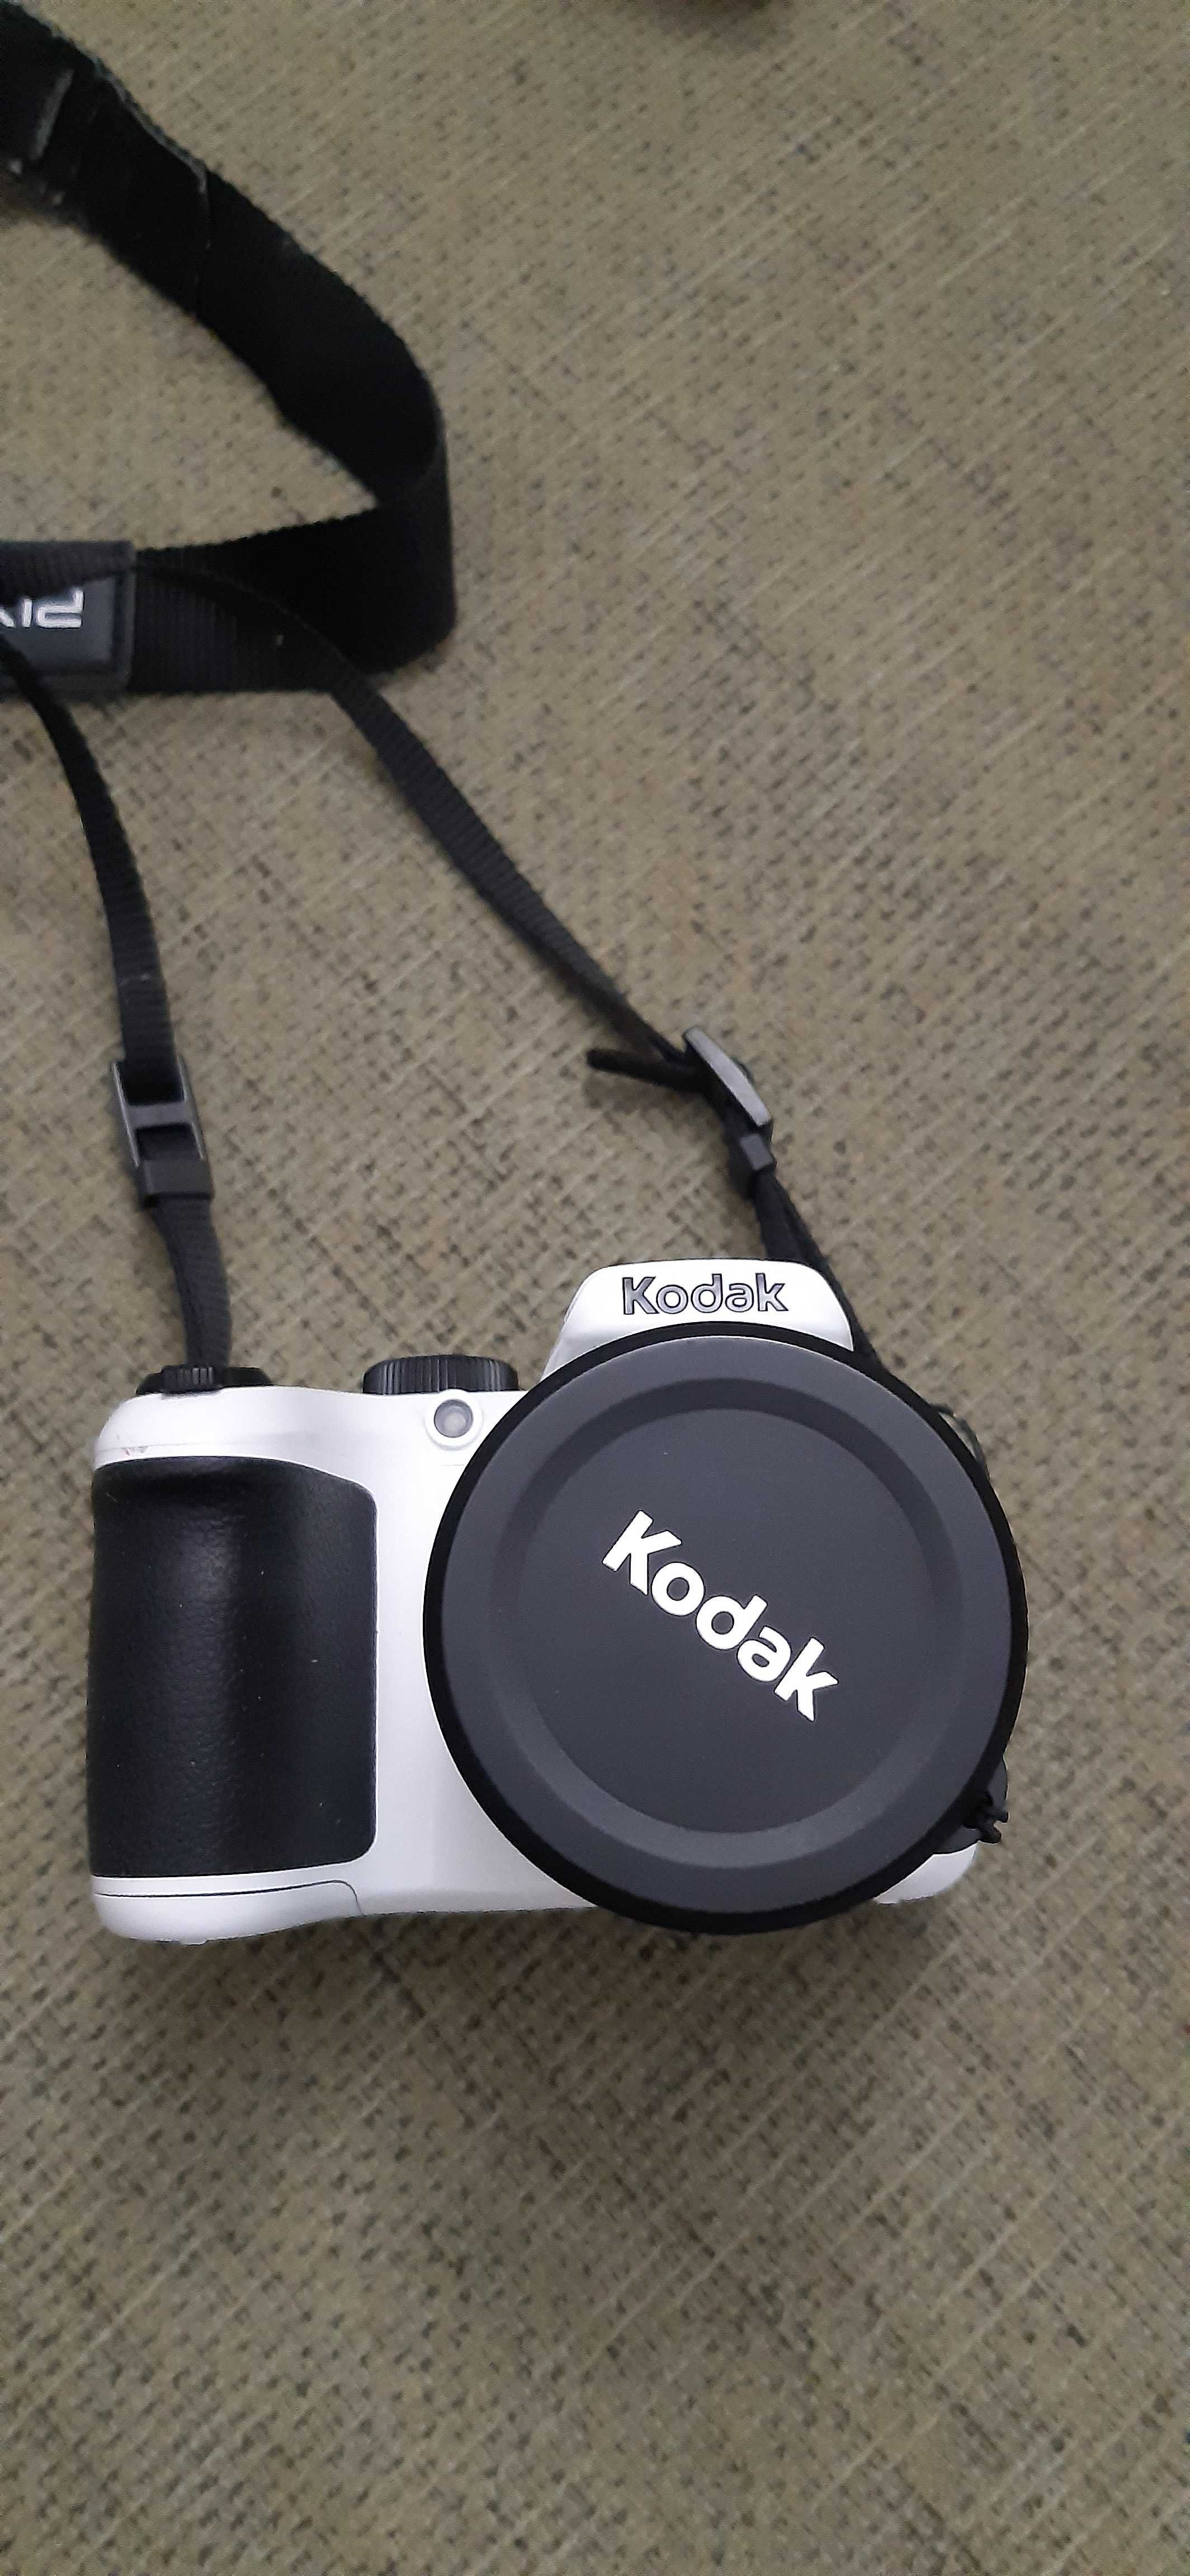 Vand camera foto semi-profesionala KODAK